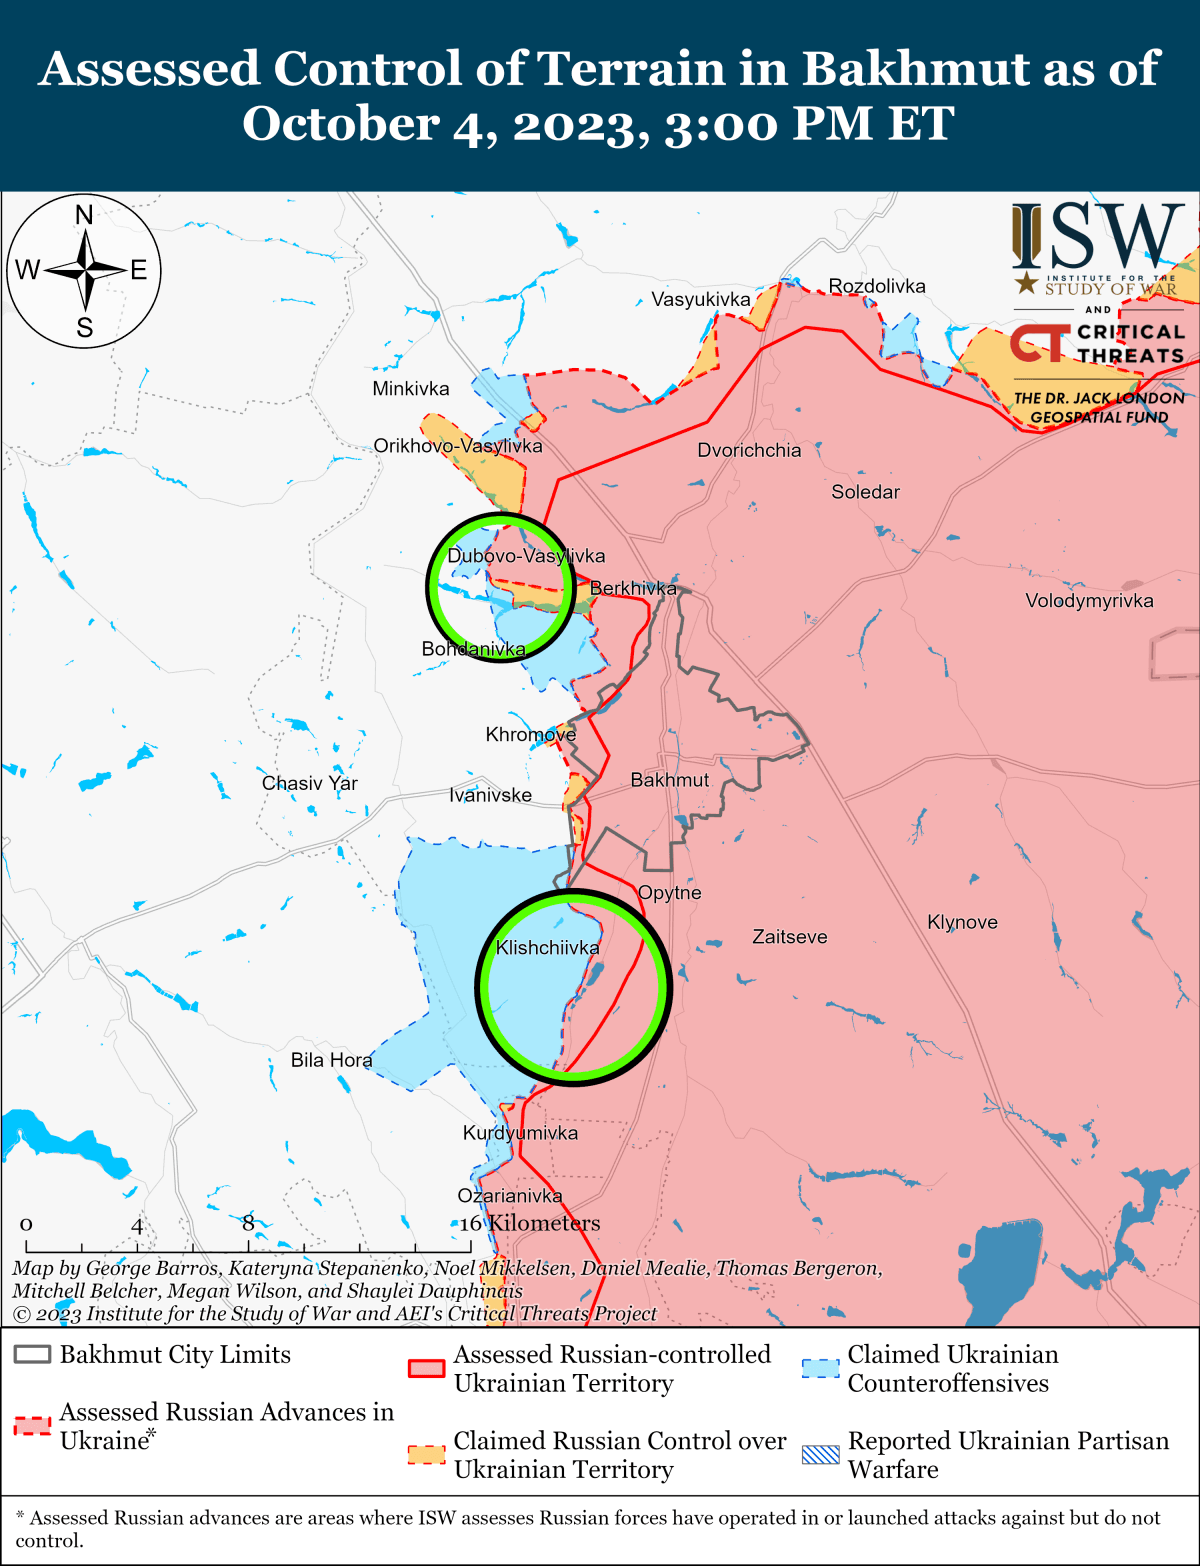 Українські сили просунулися на схід від Новопрокопівки та на південний захід від Бахмута / ISW Image 